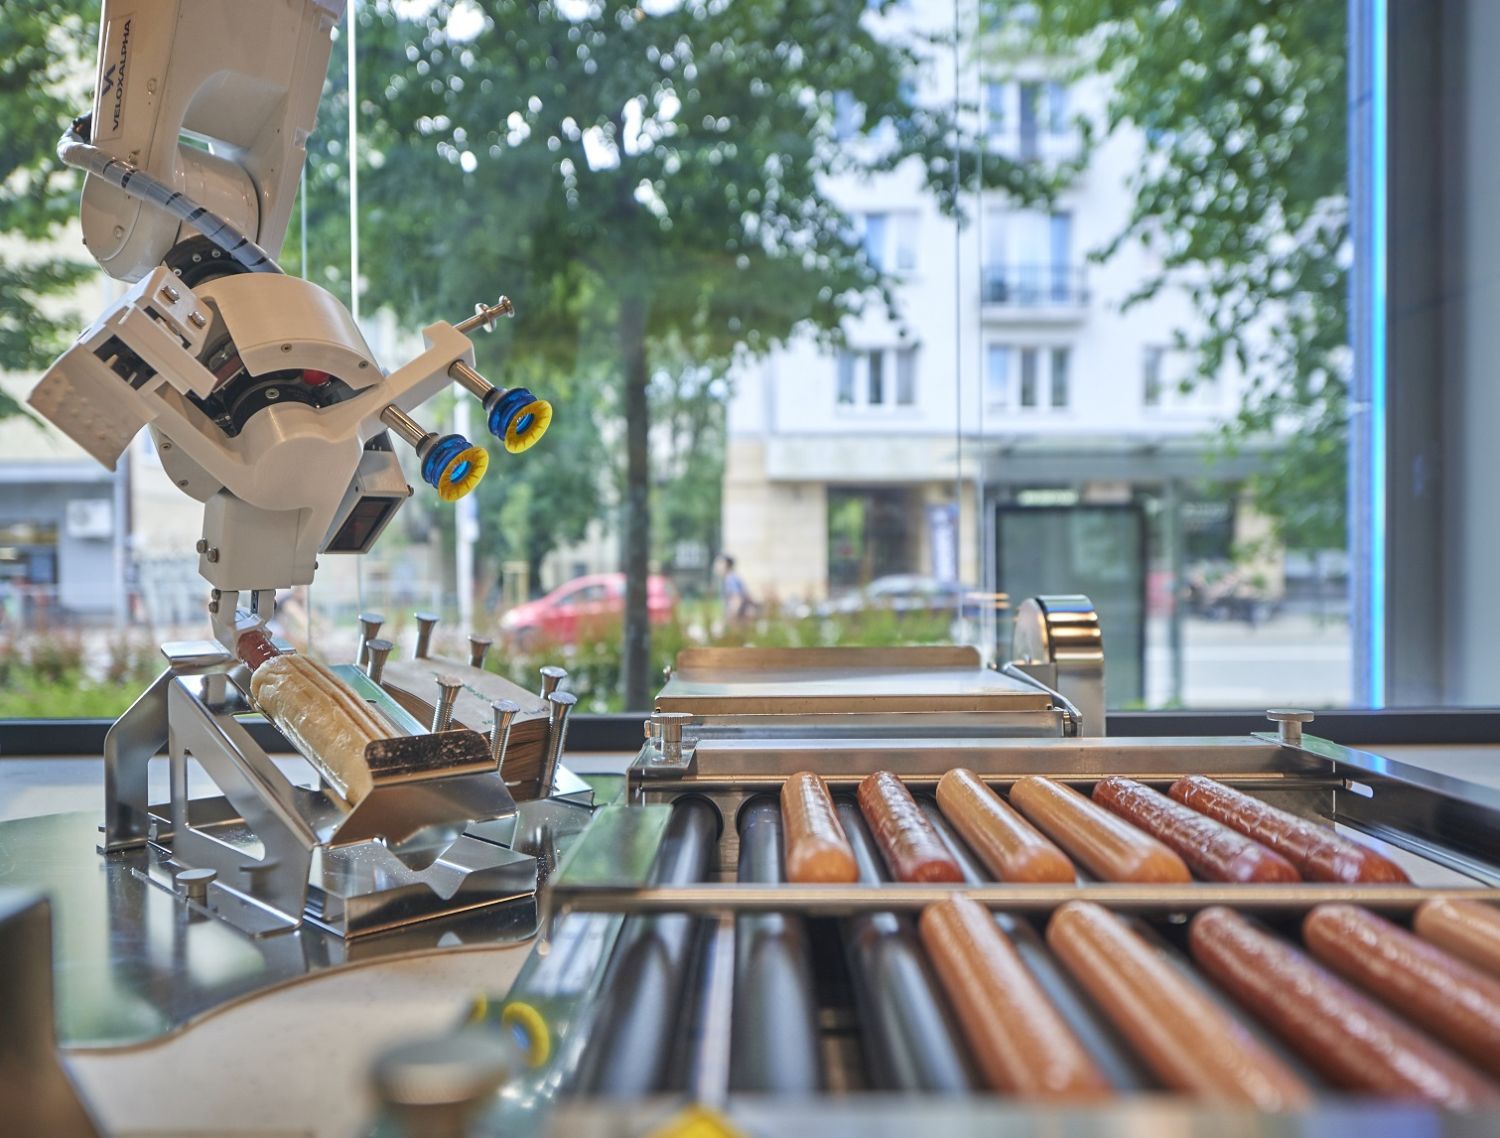 Фирменный хот-дог в автономном магазине Żabka Nano в Варшаве (Польша) готовит робот Robbie